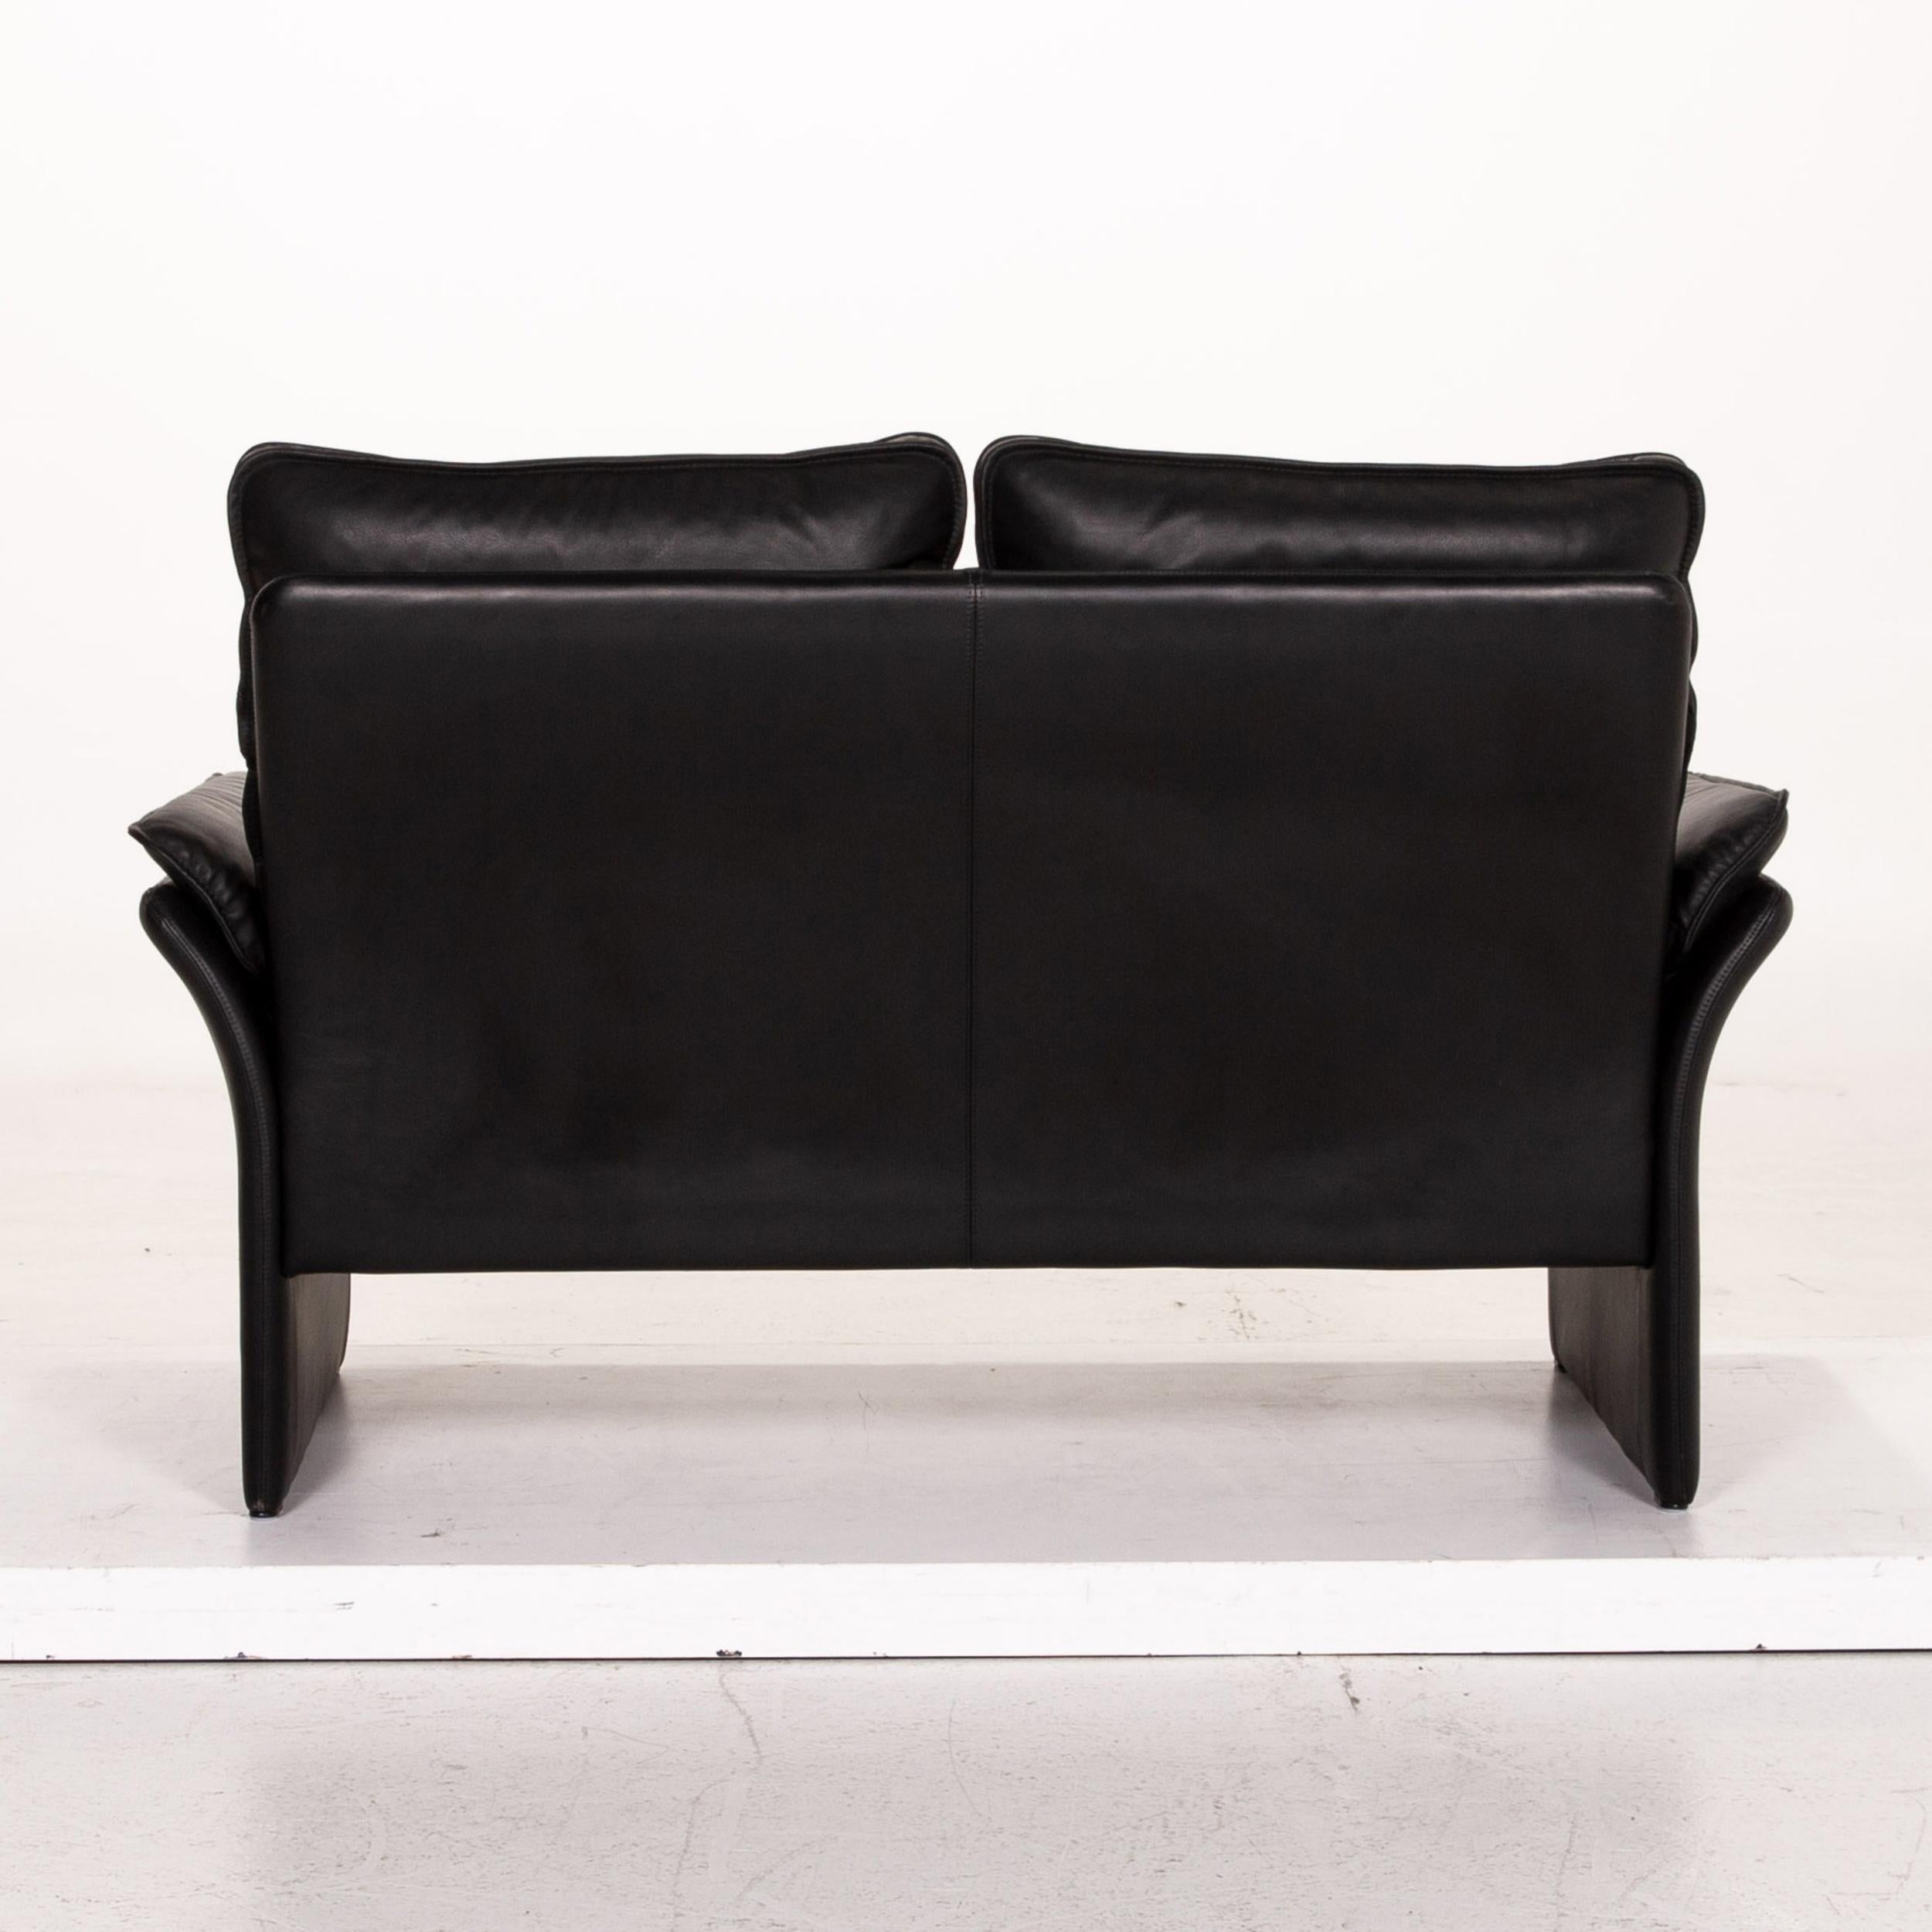 Three-Point Scala Leather Sofa Set Black 1 Three-Seat 1 Two-Seat 11